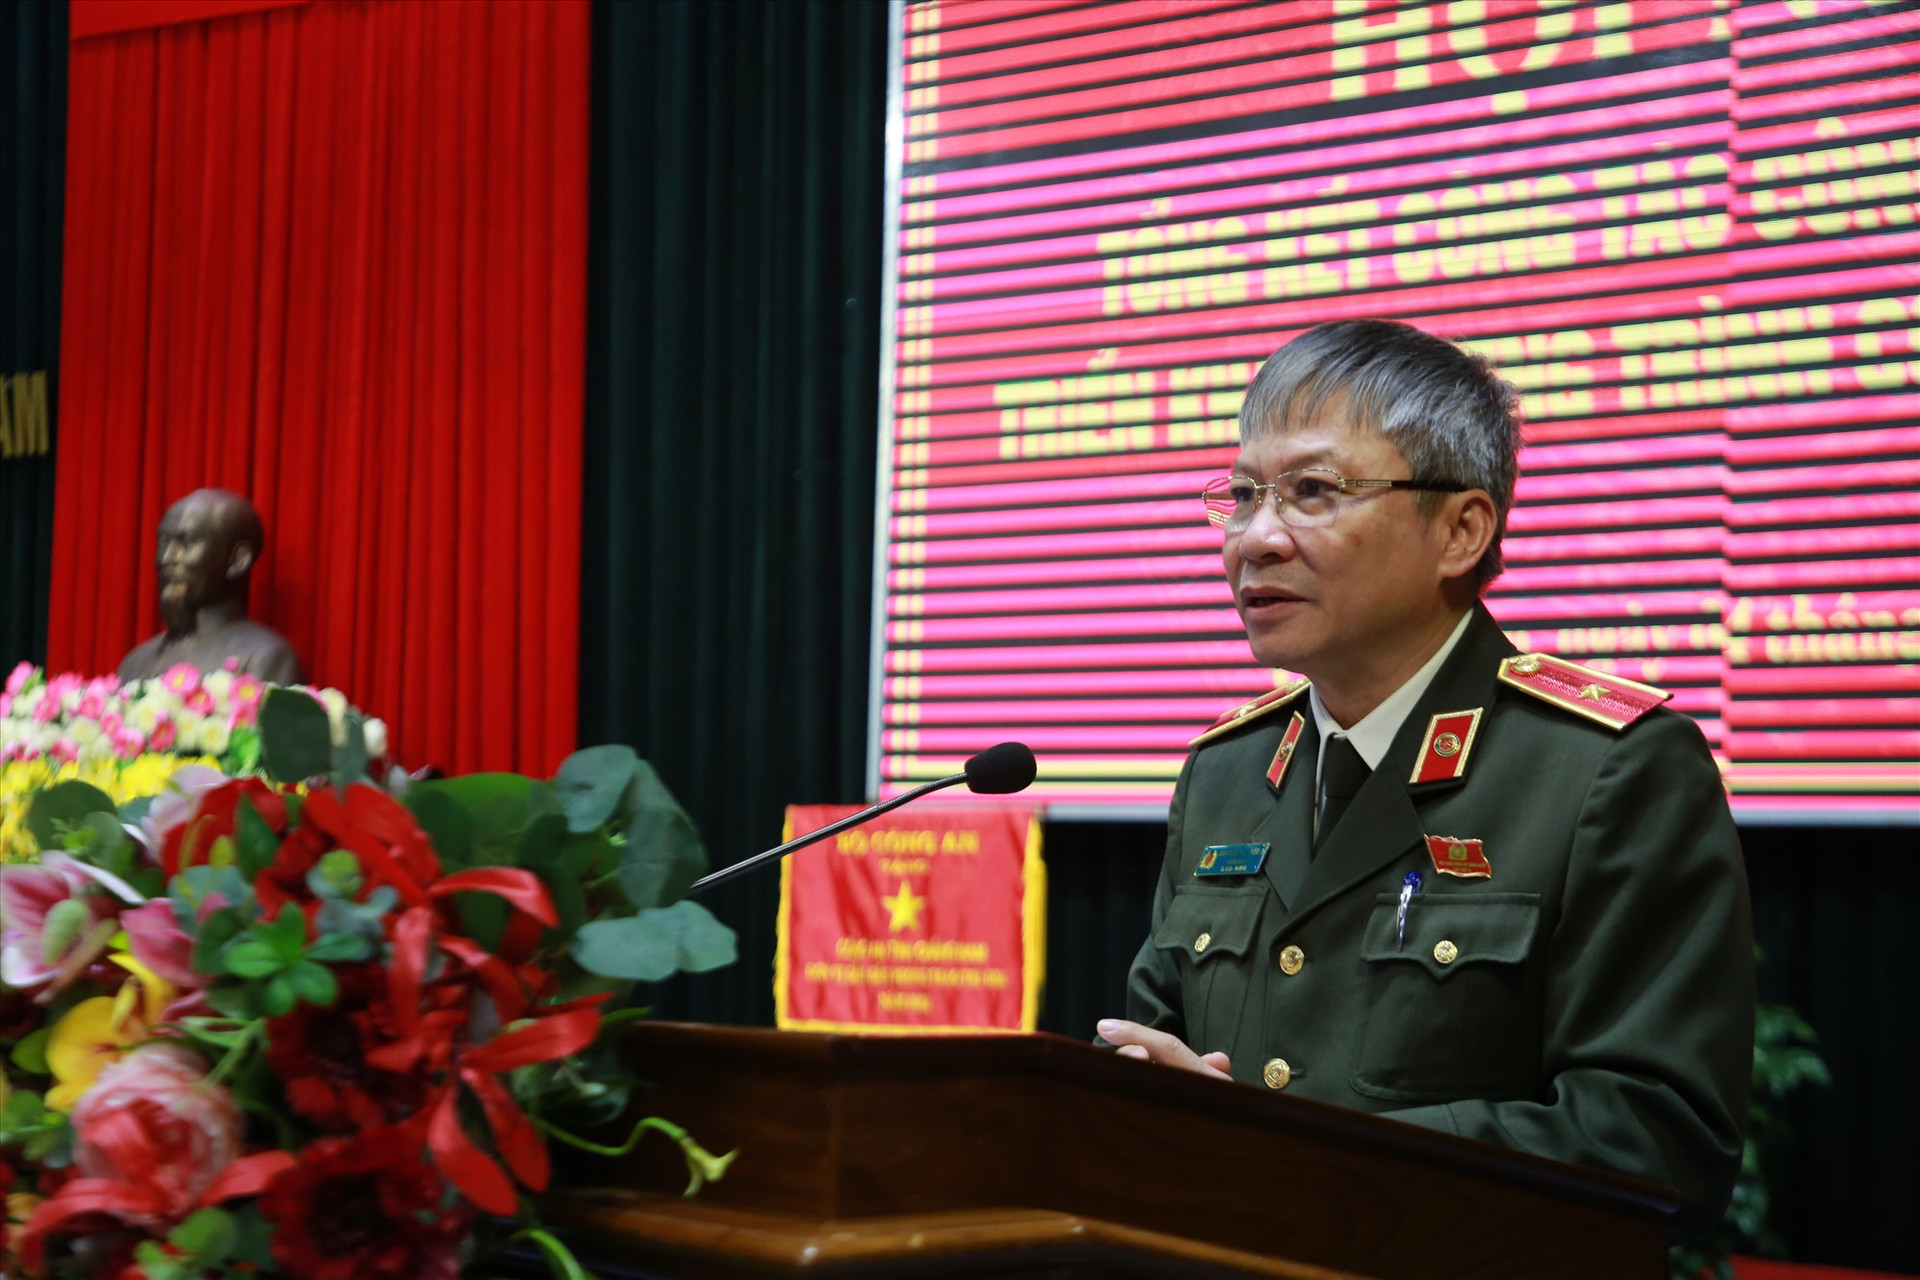 Thiếu tướng Nguyễn Đức Dũng - Giám đốc Công an tỉnh phát biểu khai mạc hội nghị. Ảnh: T.C